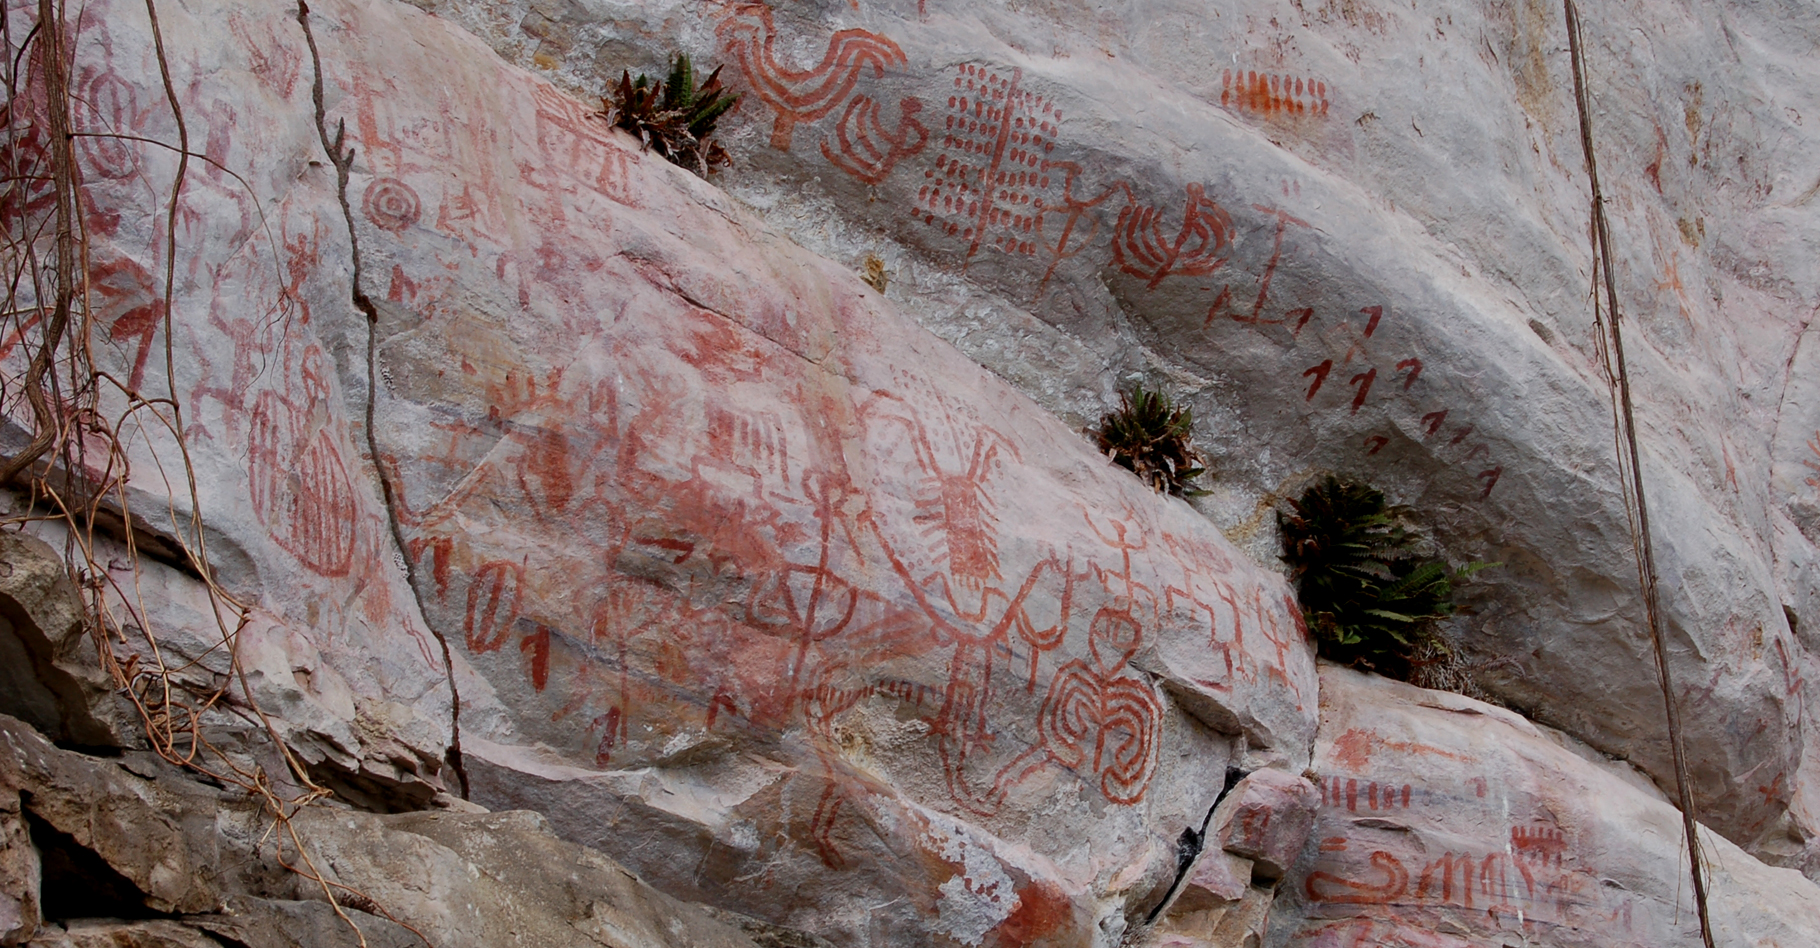 Panneau peint de signes et de figures symboliques dans l'extrême nord du Pérou (probablement XII-XVe siècles de notre ère).&nbsp;Jean Guffroy -&nbsp;©IRD - Tous droits réservés